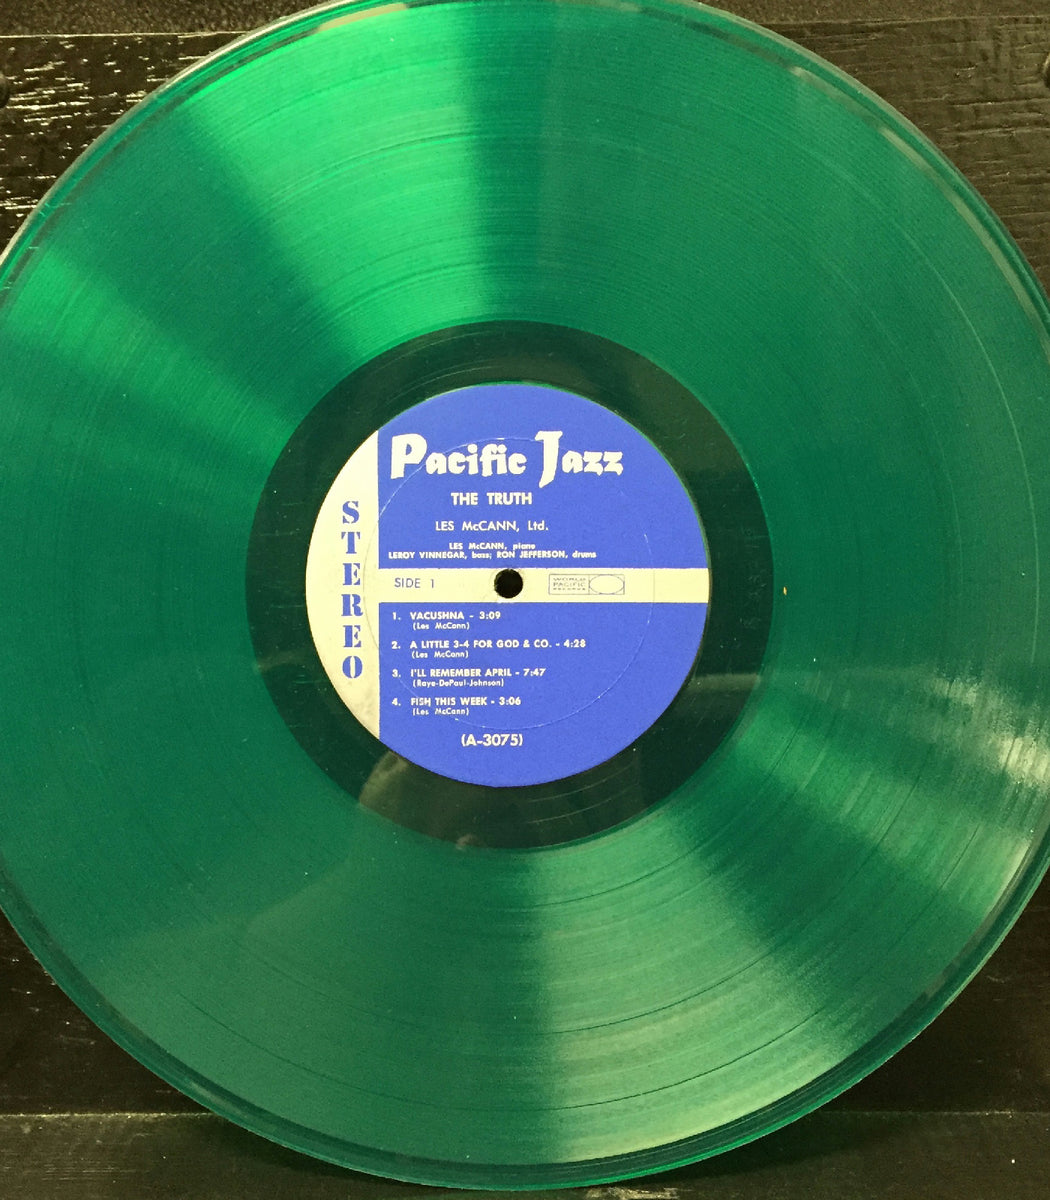 Les McCann Ltd. – The Truth - Mint- LP Record 1960 Pacific Jazz 